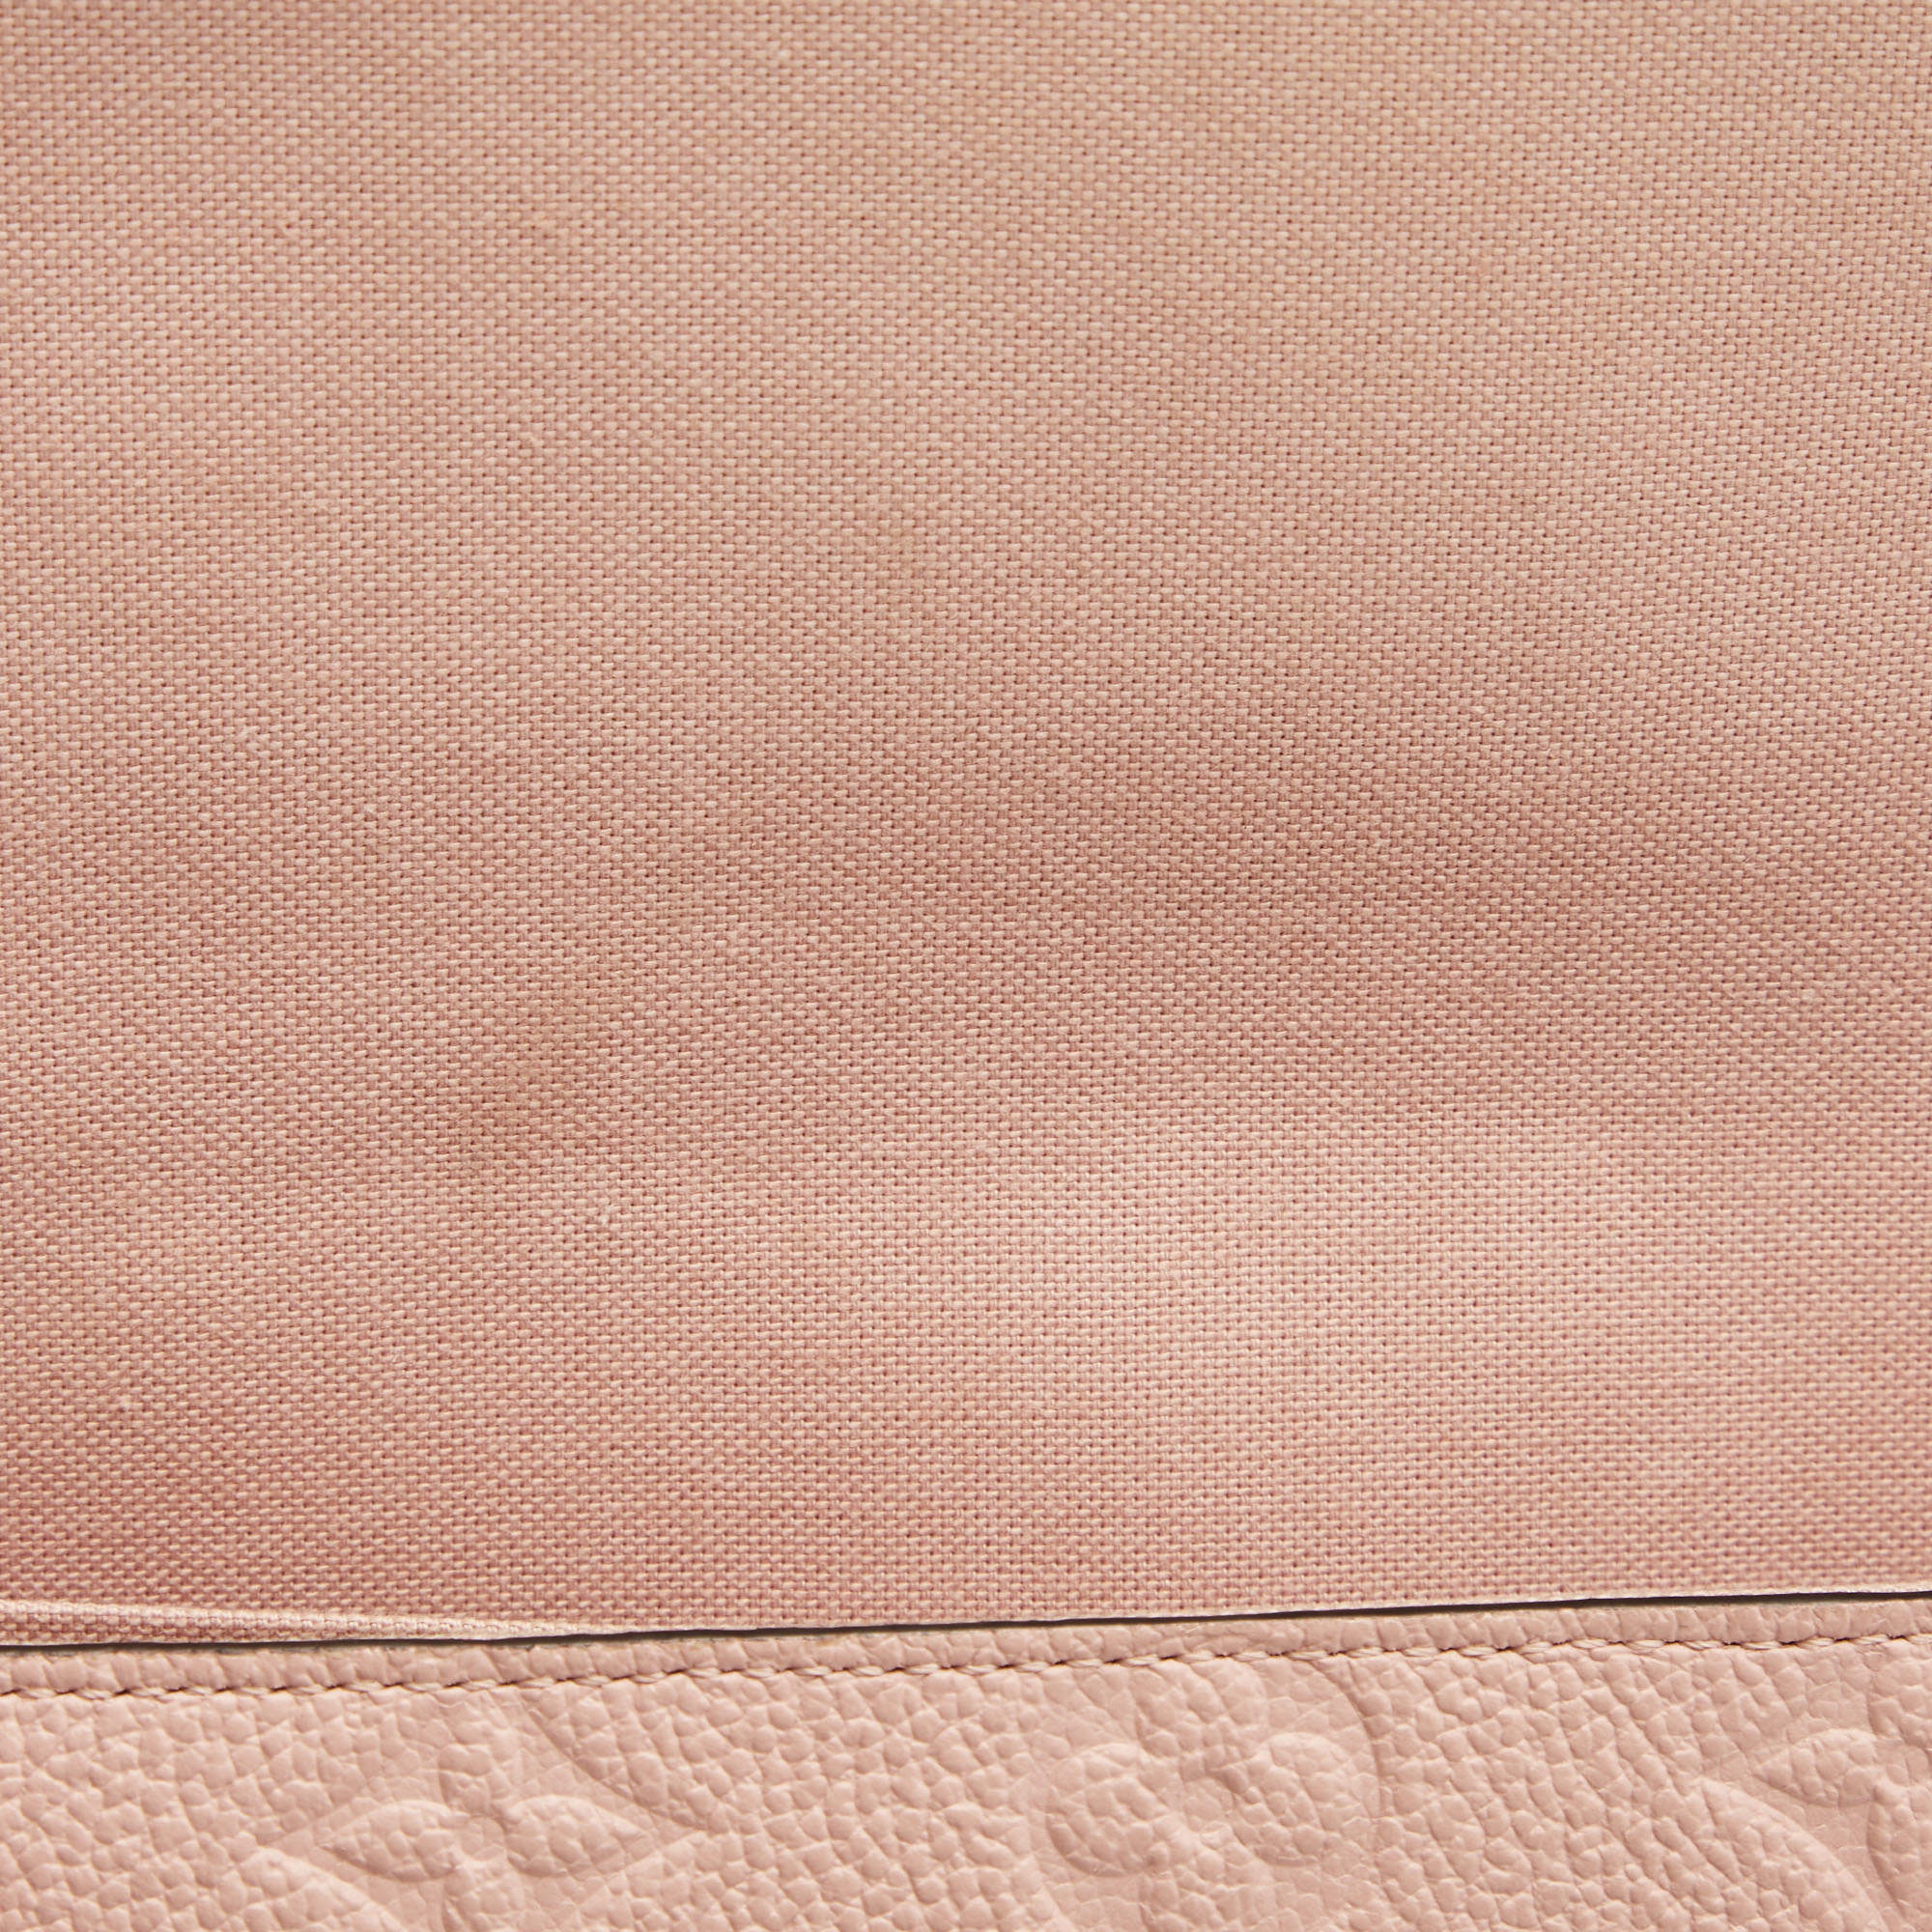 Louis Vuitton Félicie Pochette Rose Poudre Monogram Empreinte Leather